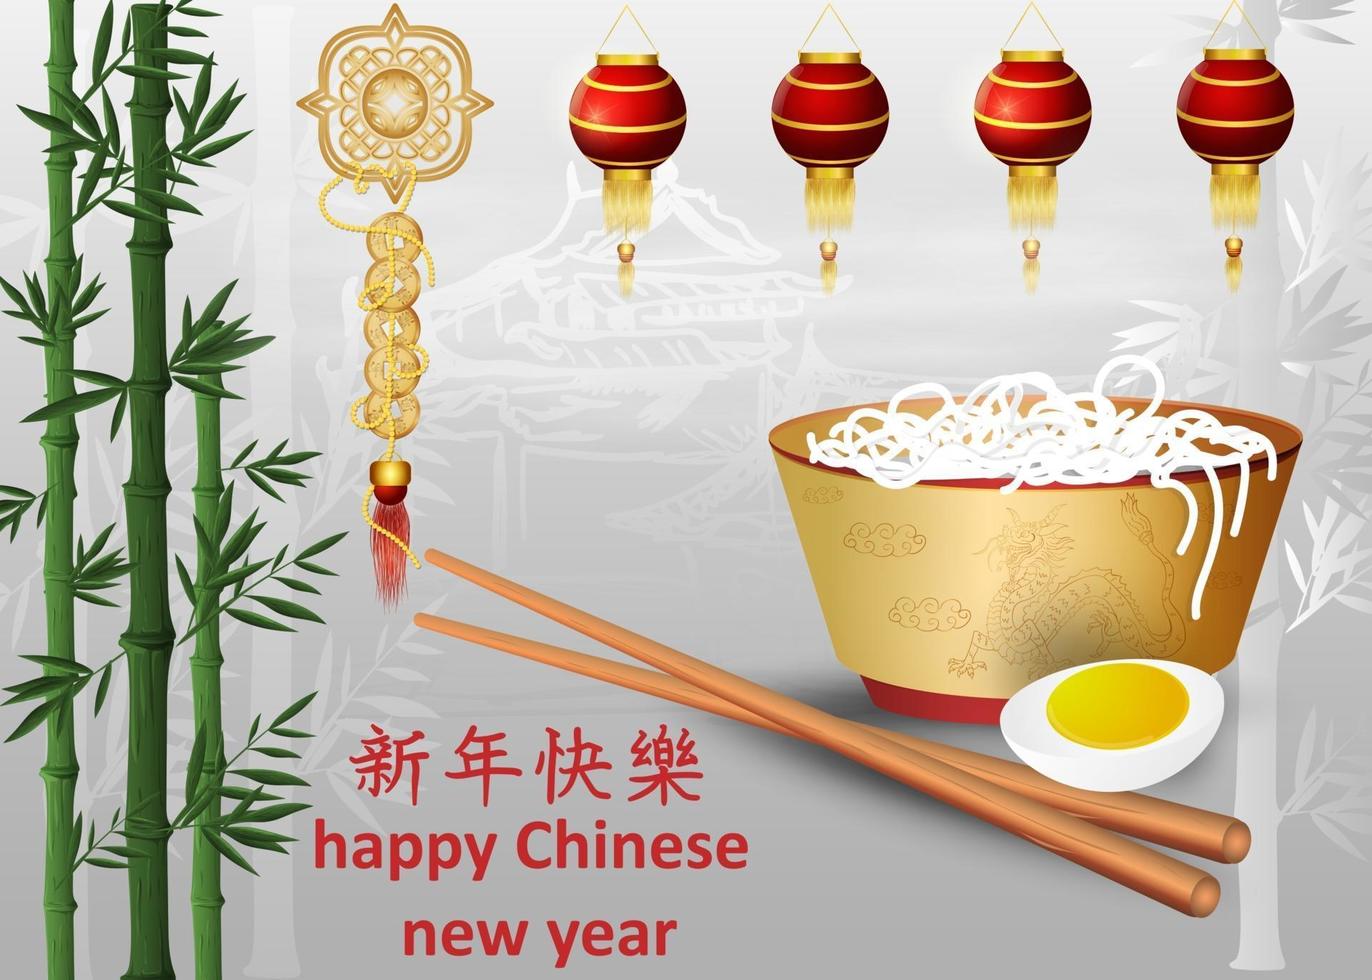 conception de carte de voeux pour le nouvel an chinois vecteur